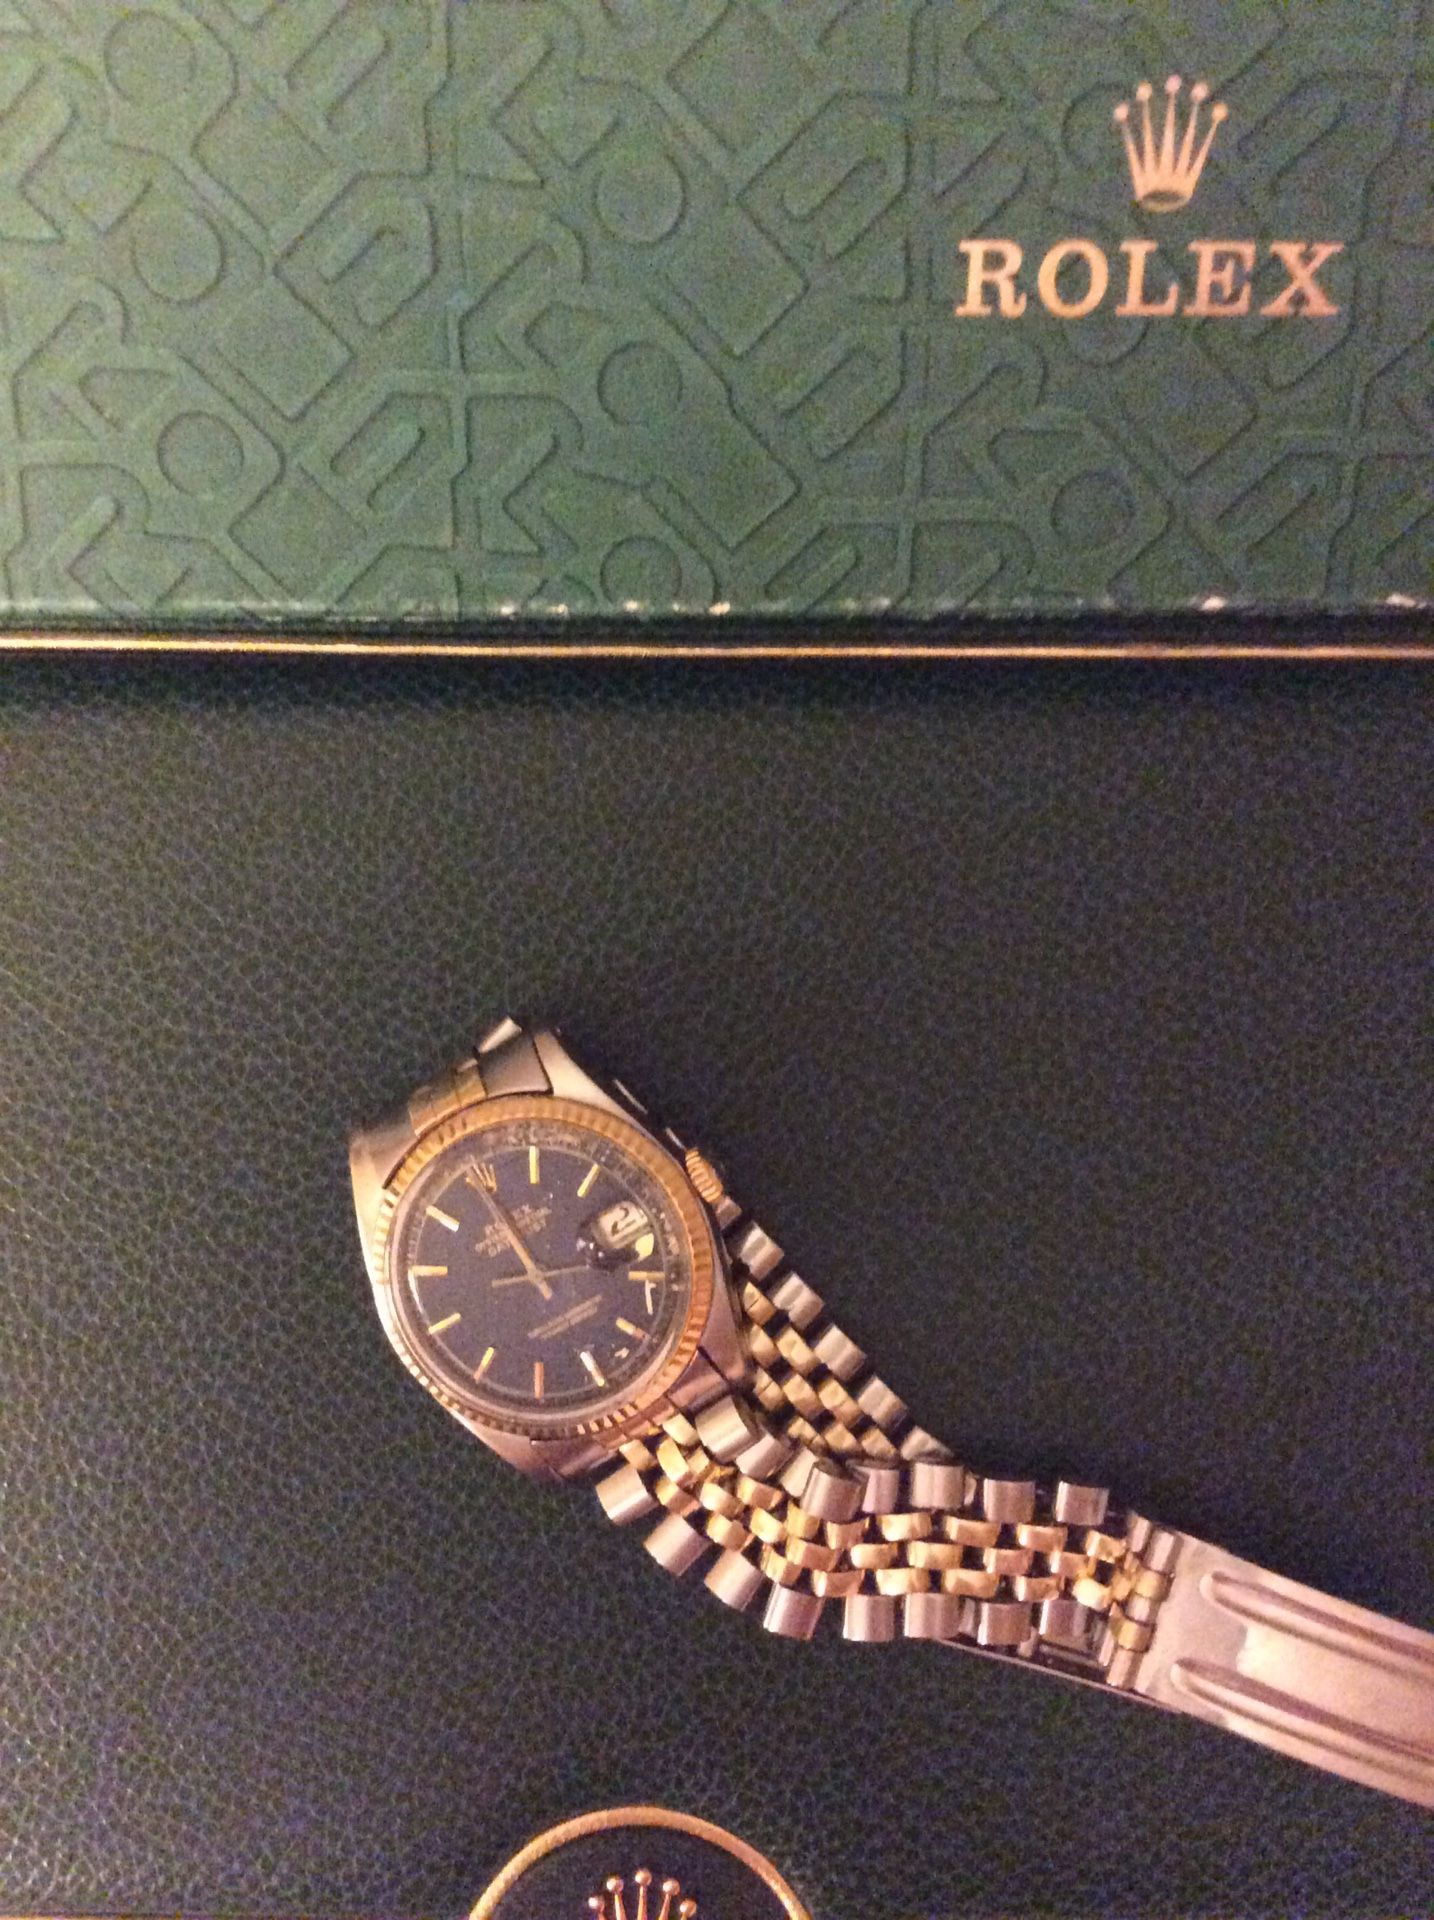 Rolex date just